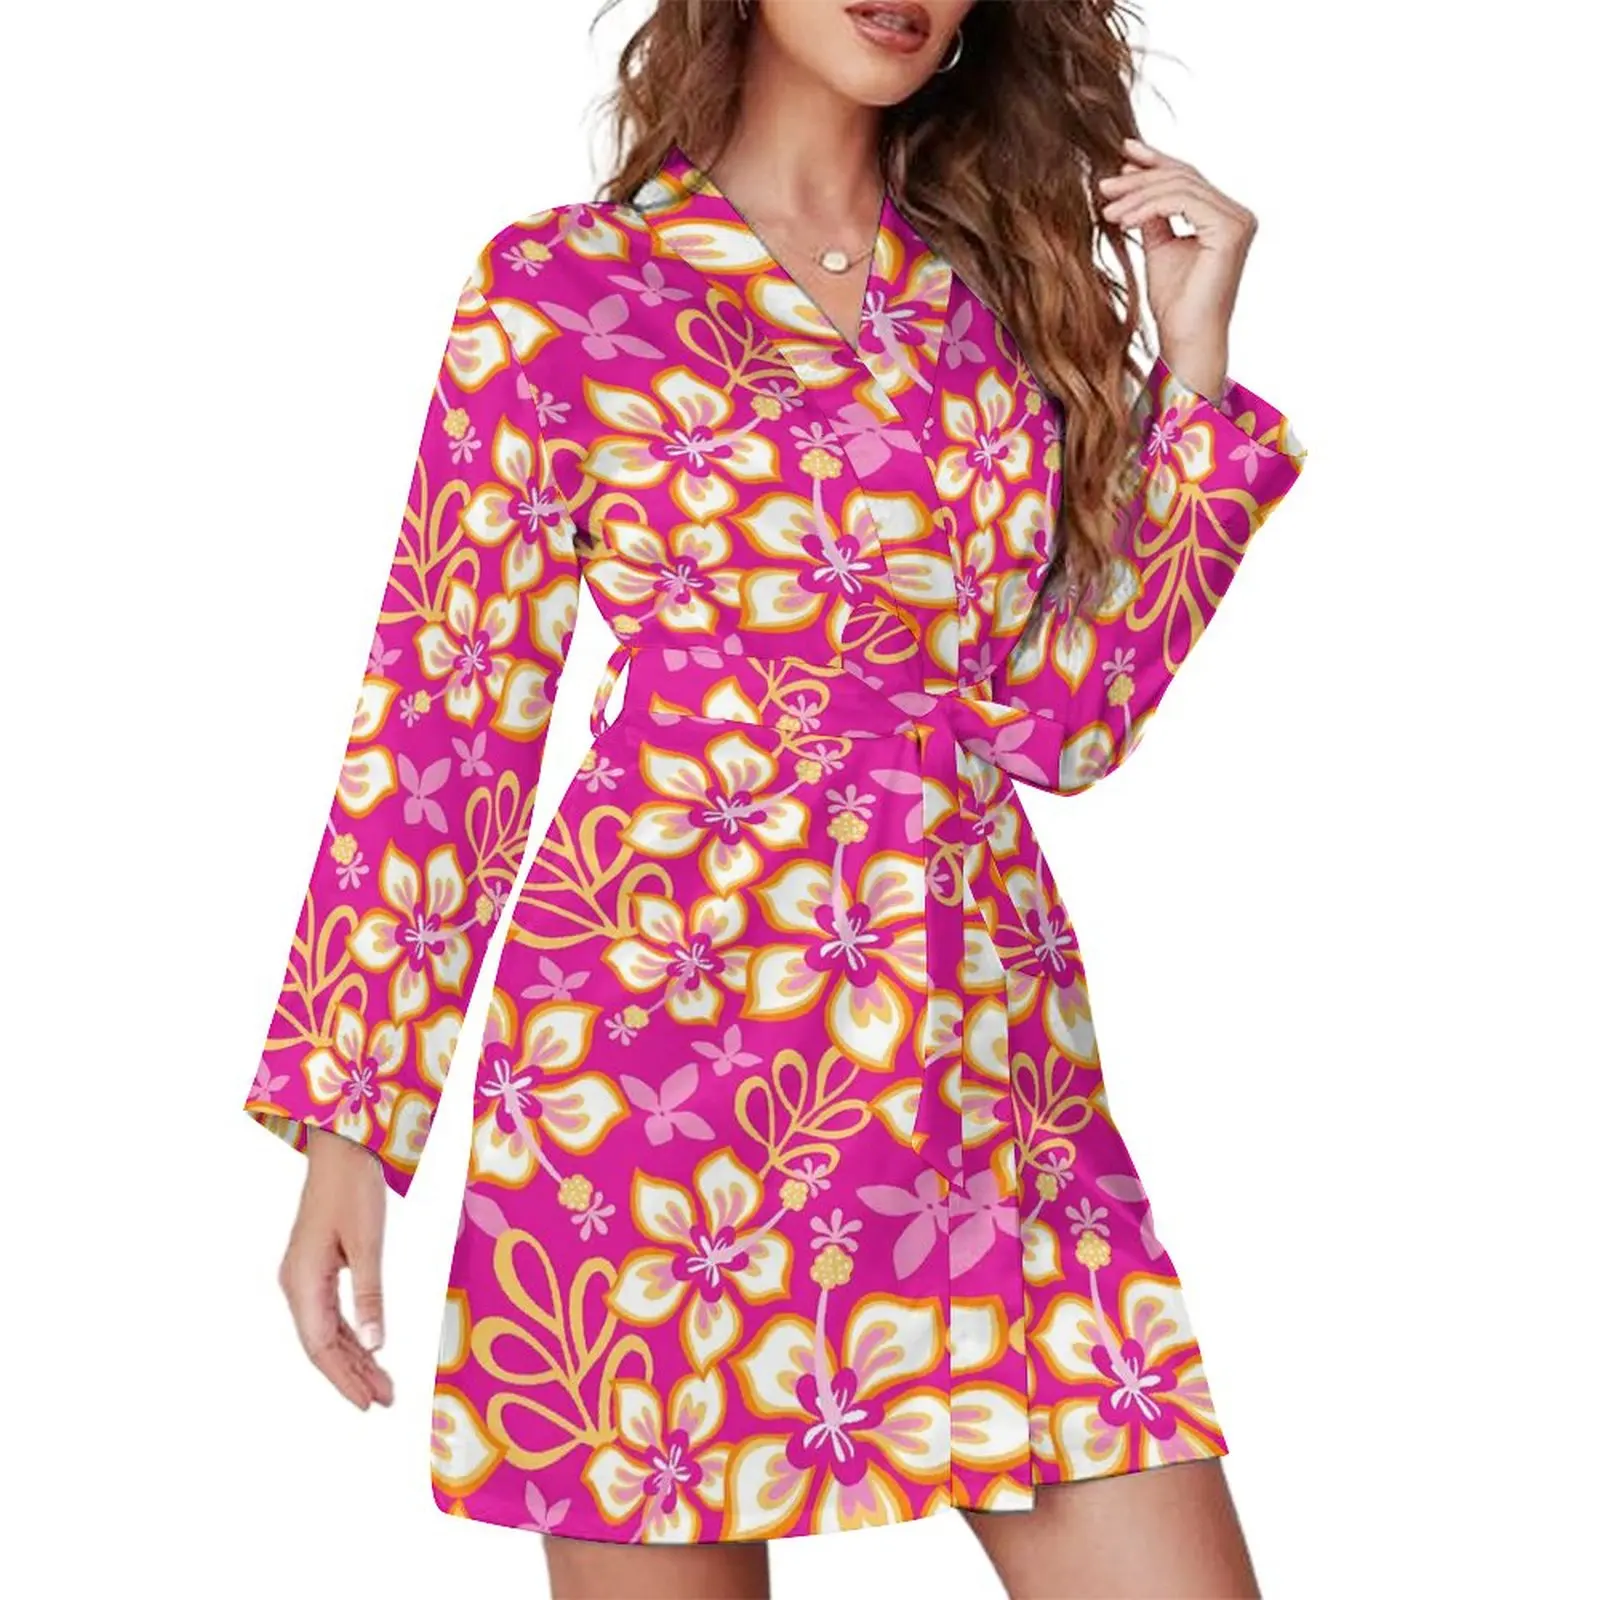 

Пижамный халат с тропическим цветочным рисунком, розовые пижамы с длинным рукавом для спальни, халаты, Женская милая одежда для сна с V-образным вырезом, весеннее платье с графическим рисунком